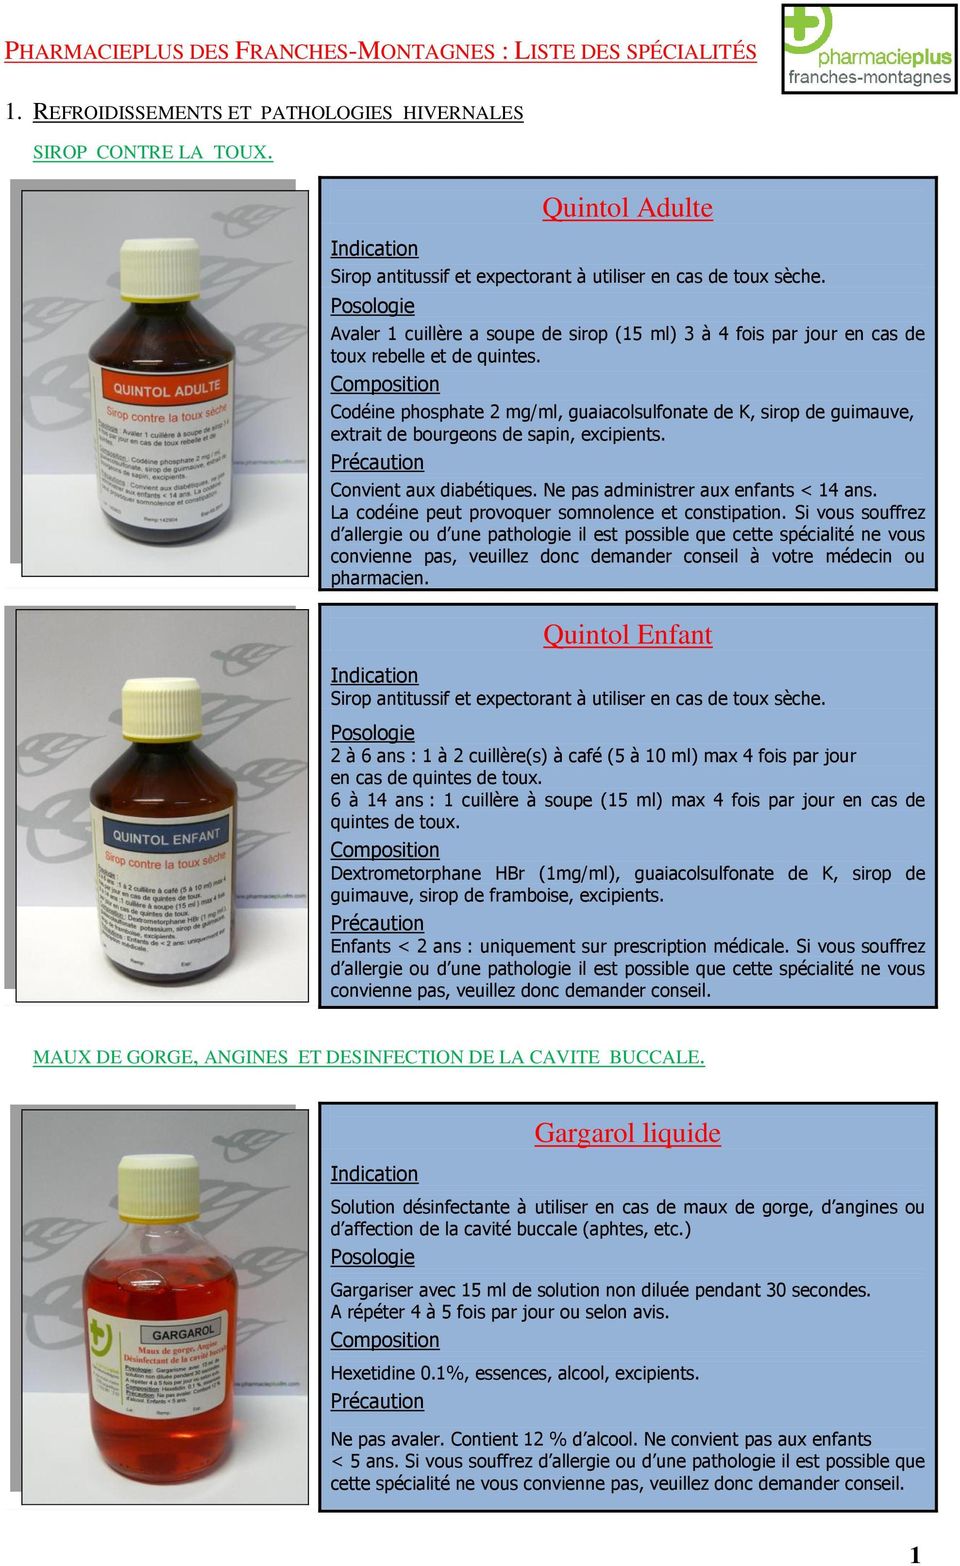 Codéine phosphate 2 mg/ml, guaiacolsulfonate de K, sirop de guimauve, extrait de bourgeons de sapin, excipients. Convient aux diabétiques. Ne pas administrer aux enfants < 14 ans.